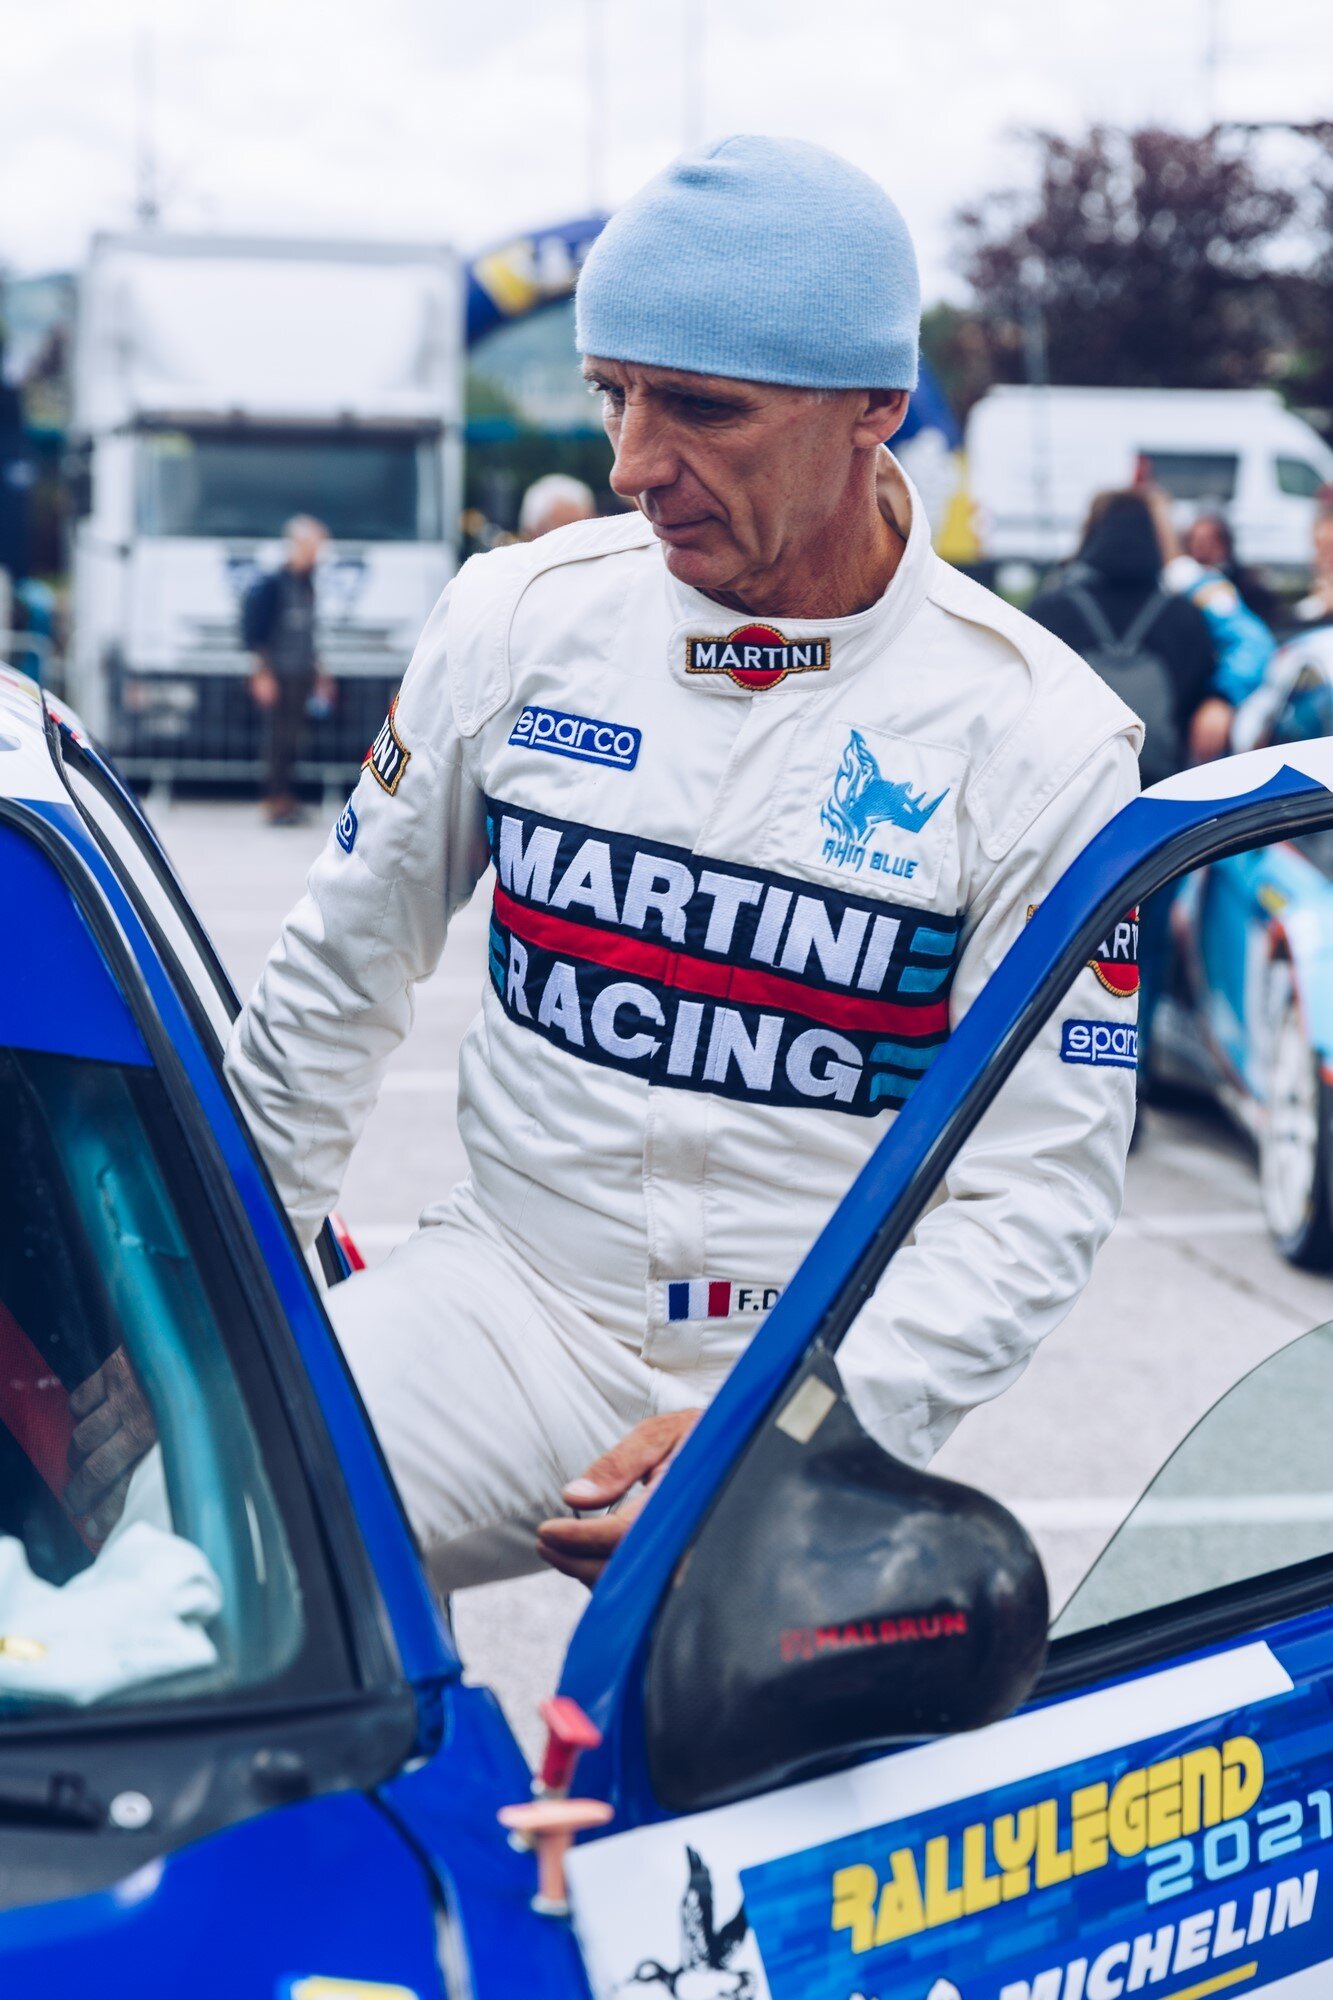 Martini Racing - Kläder & Utrustning till Racing